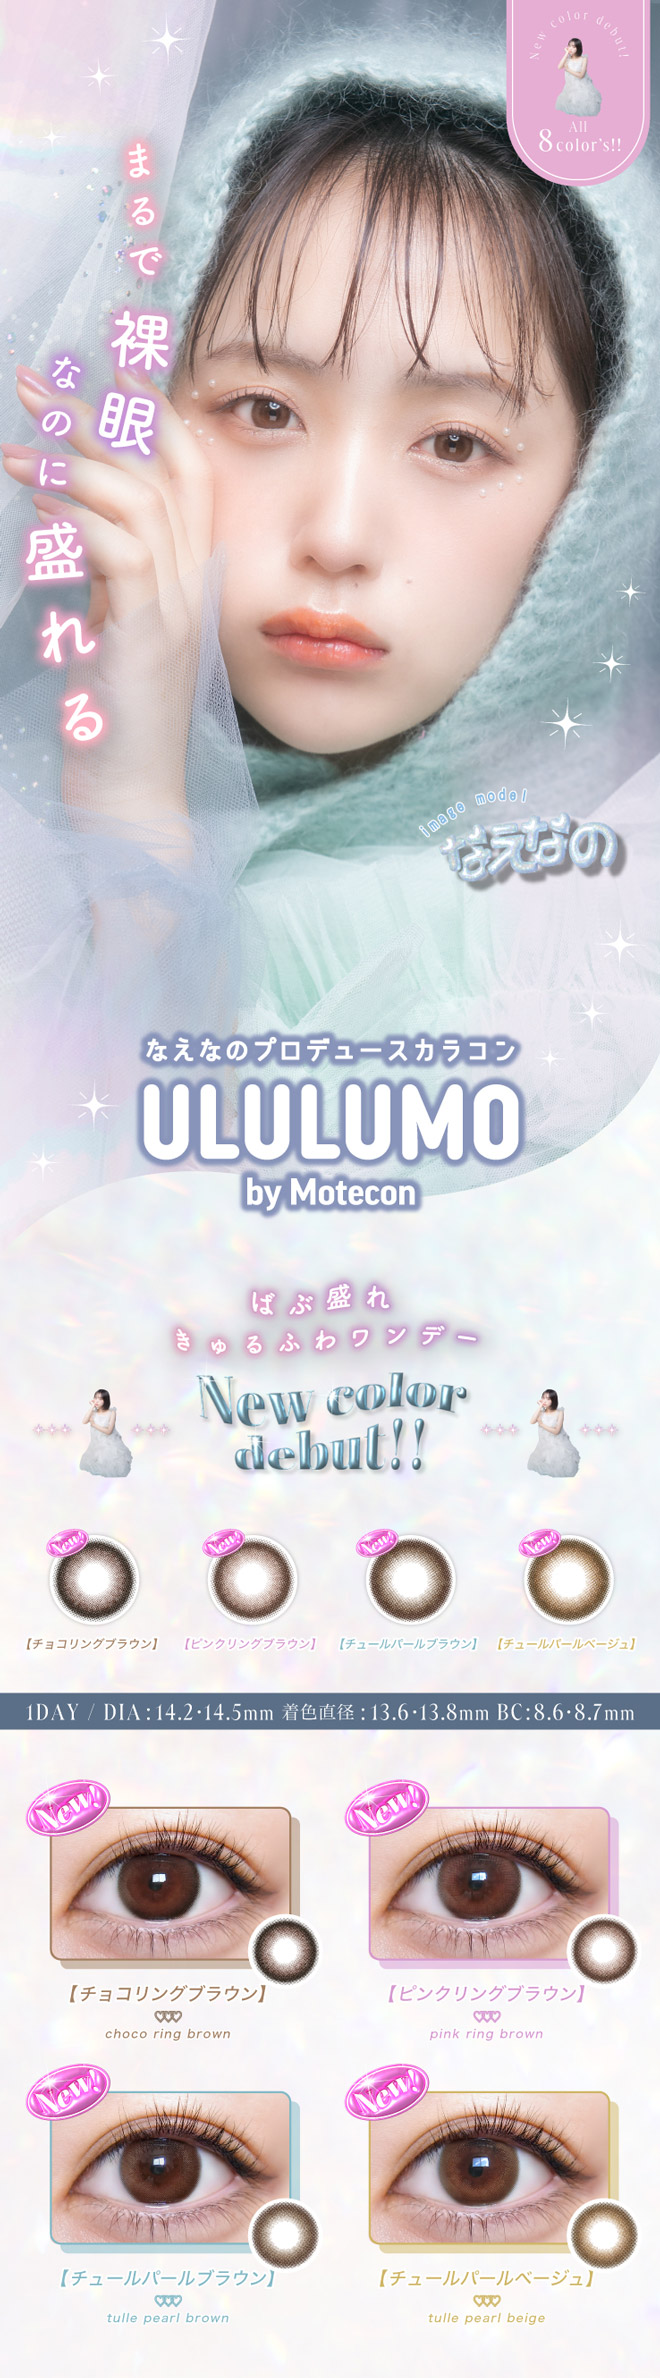 ウルルモ バイ モテコン くまさんくりくり 10枚入 ULULUMO by Motecon